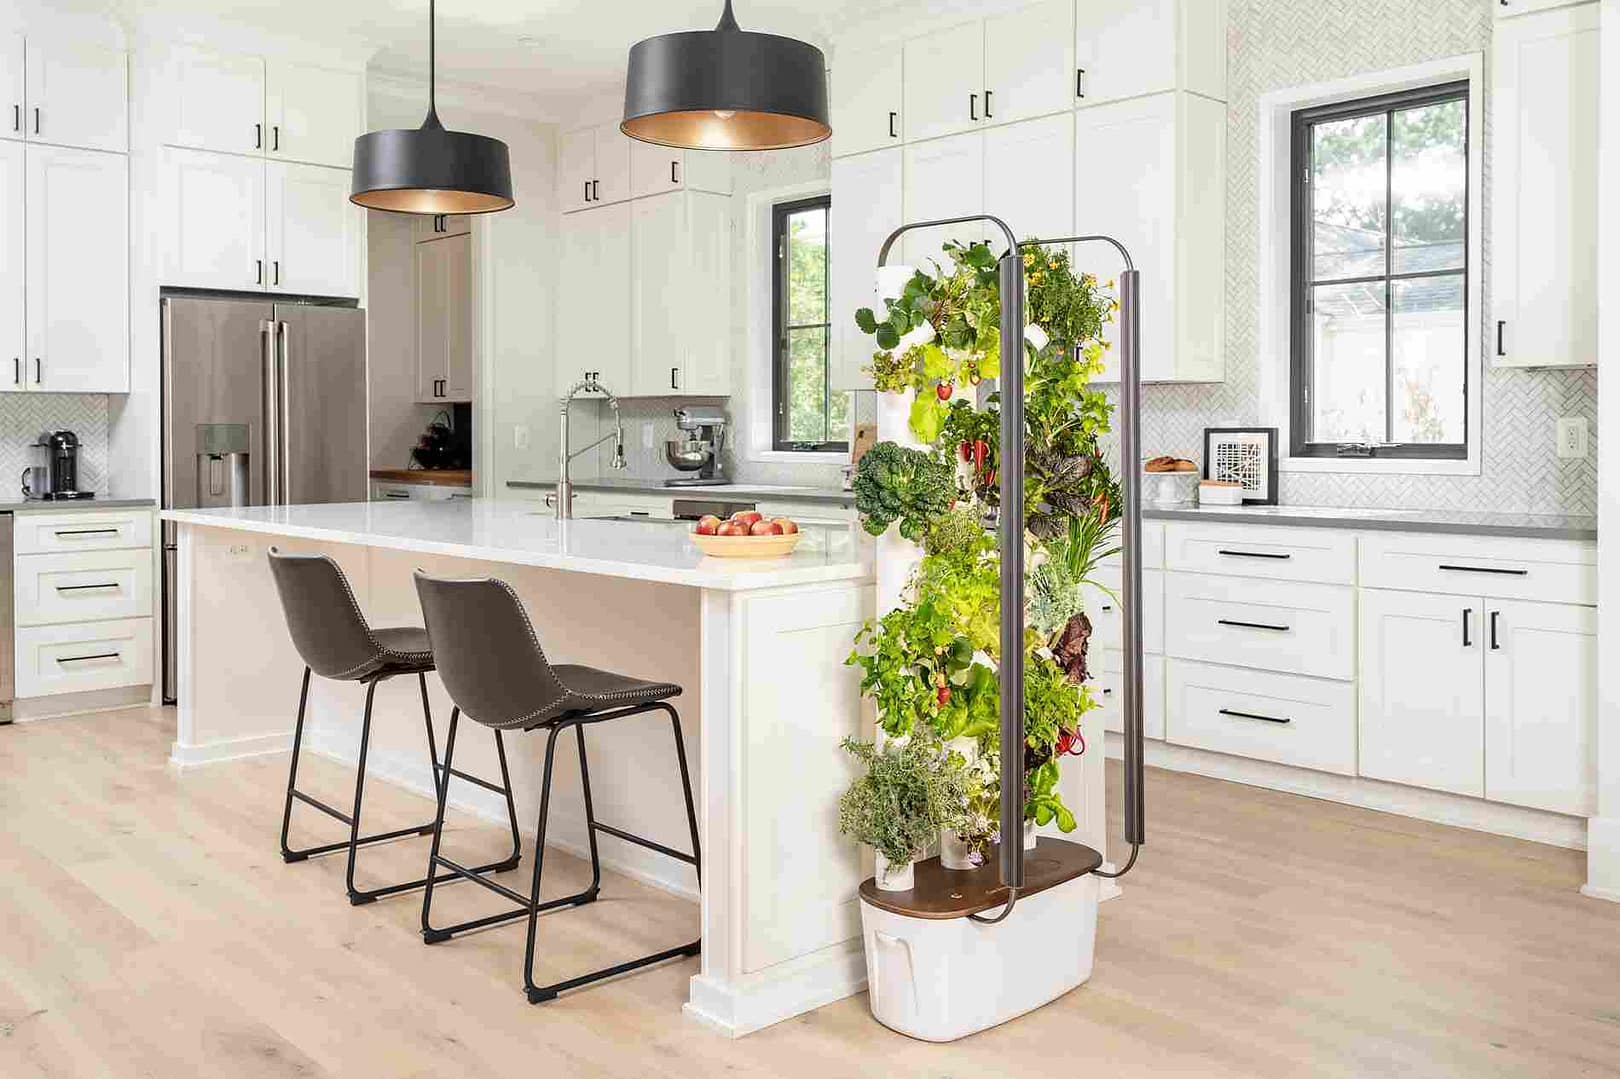 Gardyn hydroponics indoor growing systems